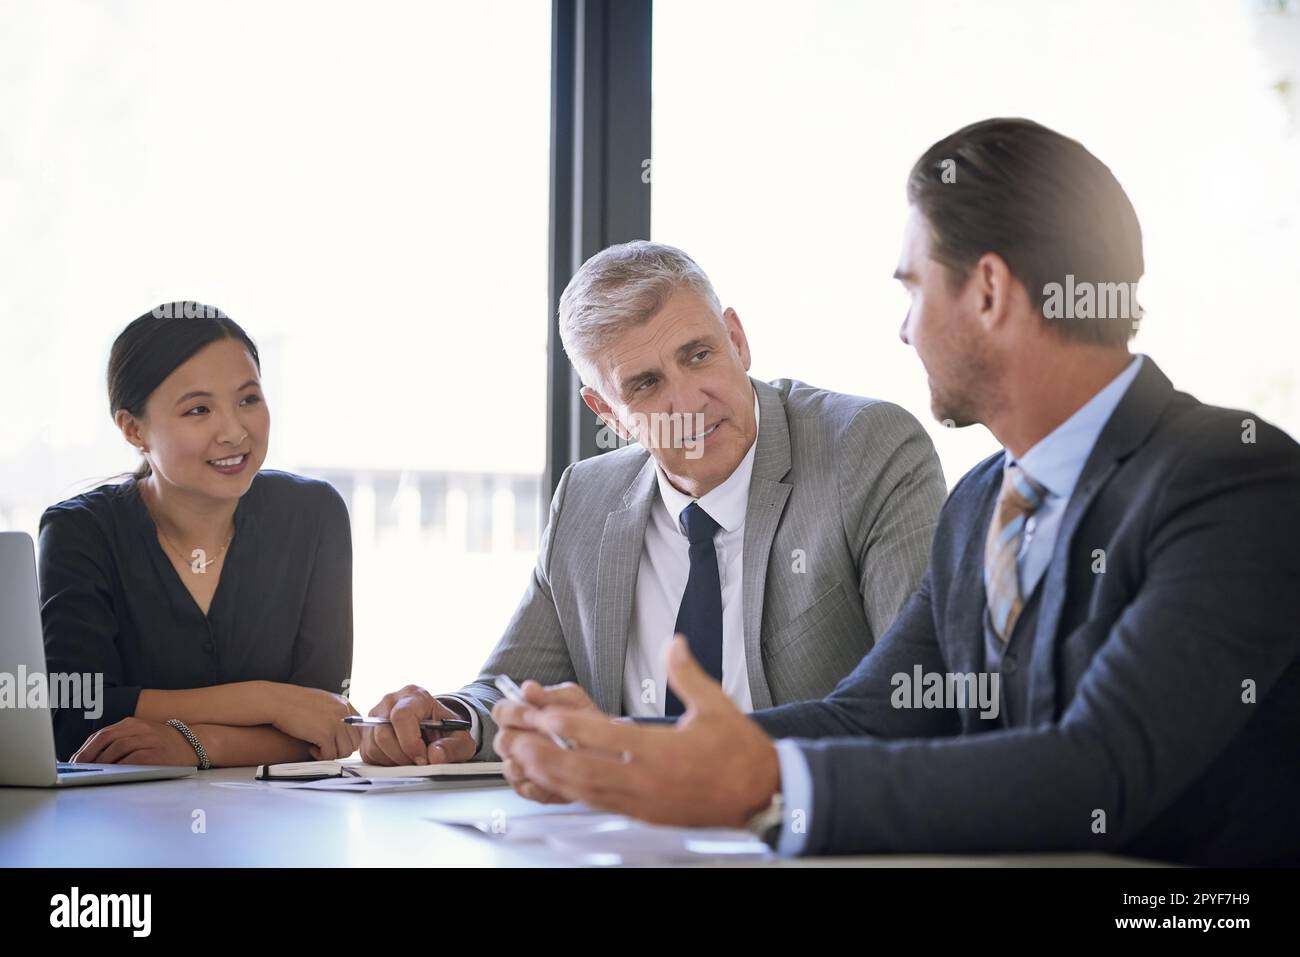 Sie alle verfügen über einzigartige Fähigkeiten, um ihren Beitrag zu leisten. Ein Team von Geschäftsleuten, die sich an einem Tisch im Sitzungssaal treffen. Stockfoto